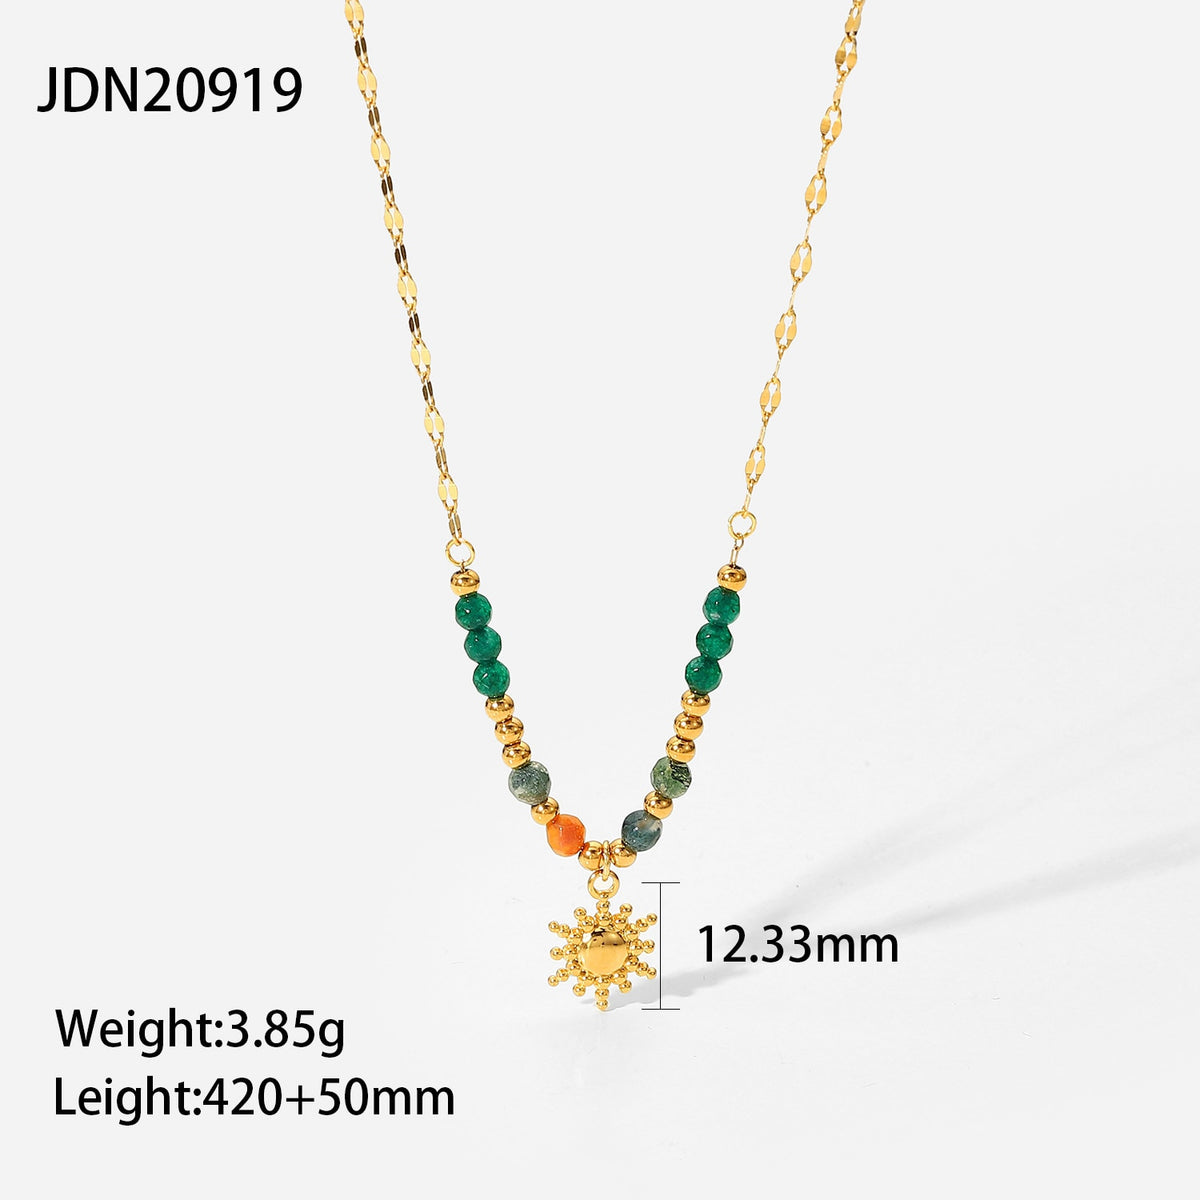 Handgefertigte Naturstein-Edelstahl-Halskette, nicht anlaufend, 18 Karat Gold, Sonnen-Anhänger, Schlüsselbeinkette, Halskette für Monther